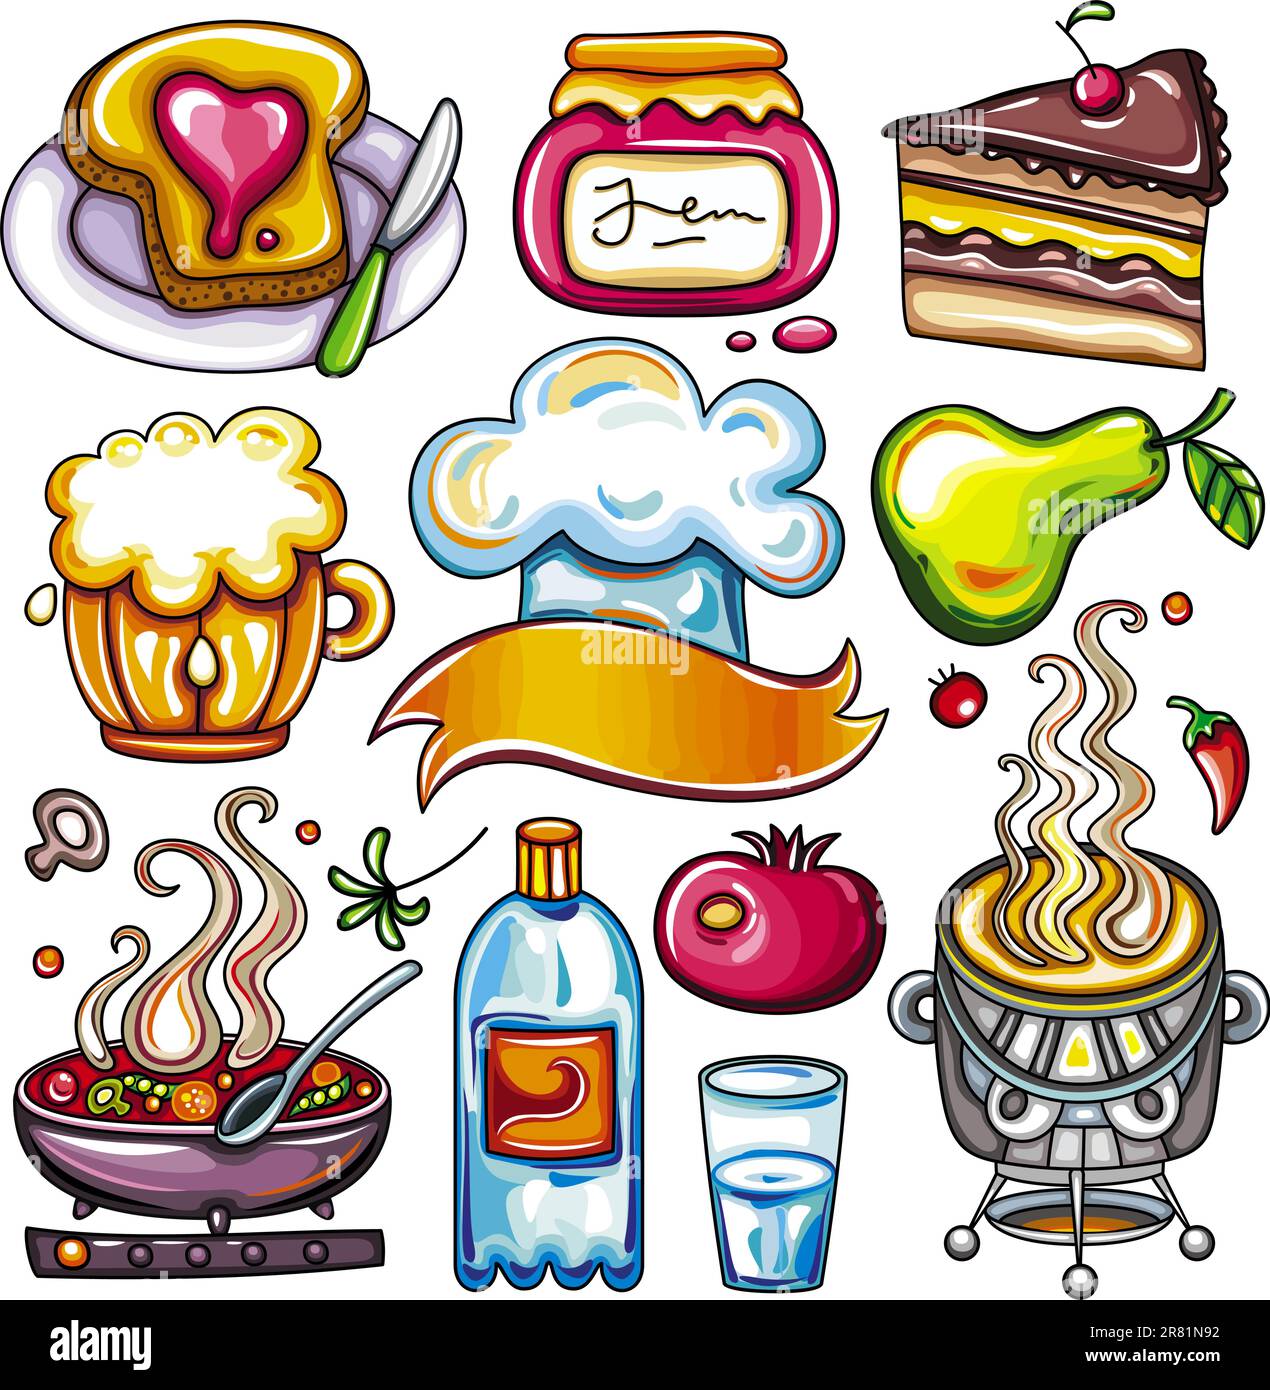 Ensemble de symboles alimentaires colorés avec : un pot de confiture et un sandwich, gâteau au chocolat, tasse à bière, grenade fraîche, poire juteuse, piment fort, embouteillage... Illustration de Vecteur